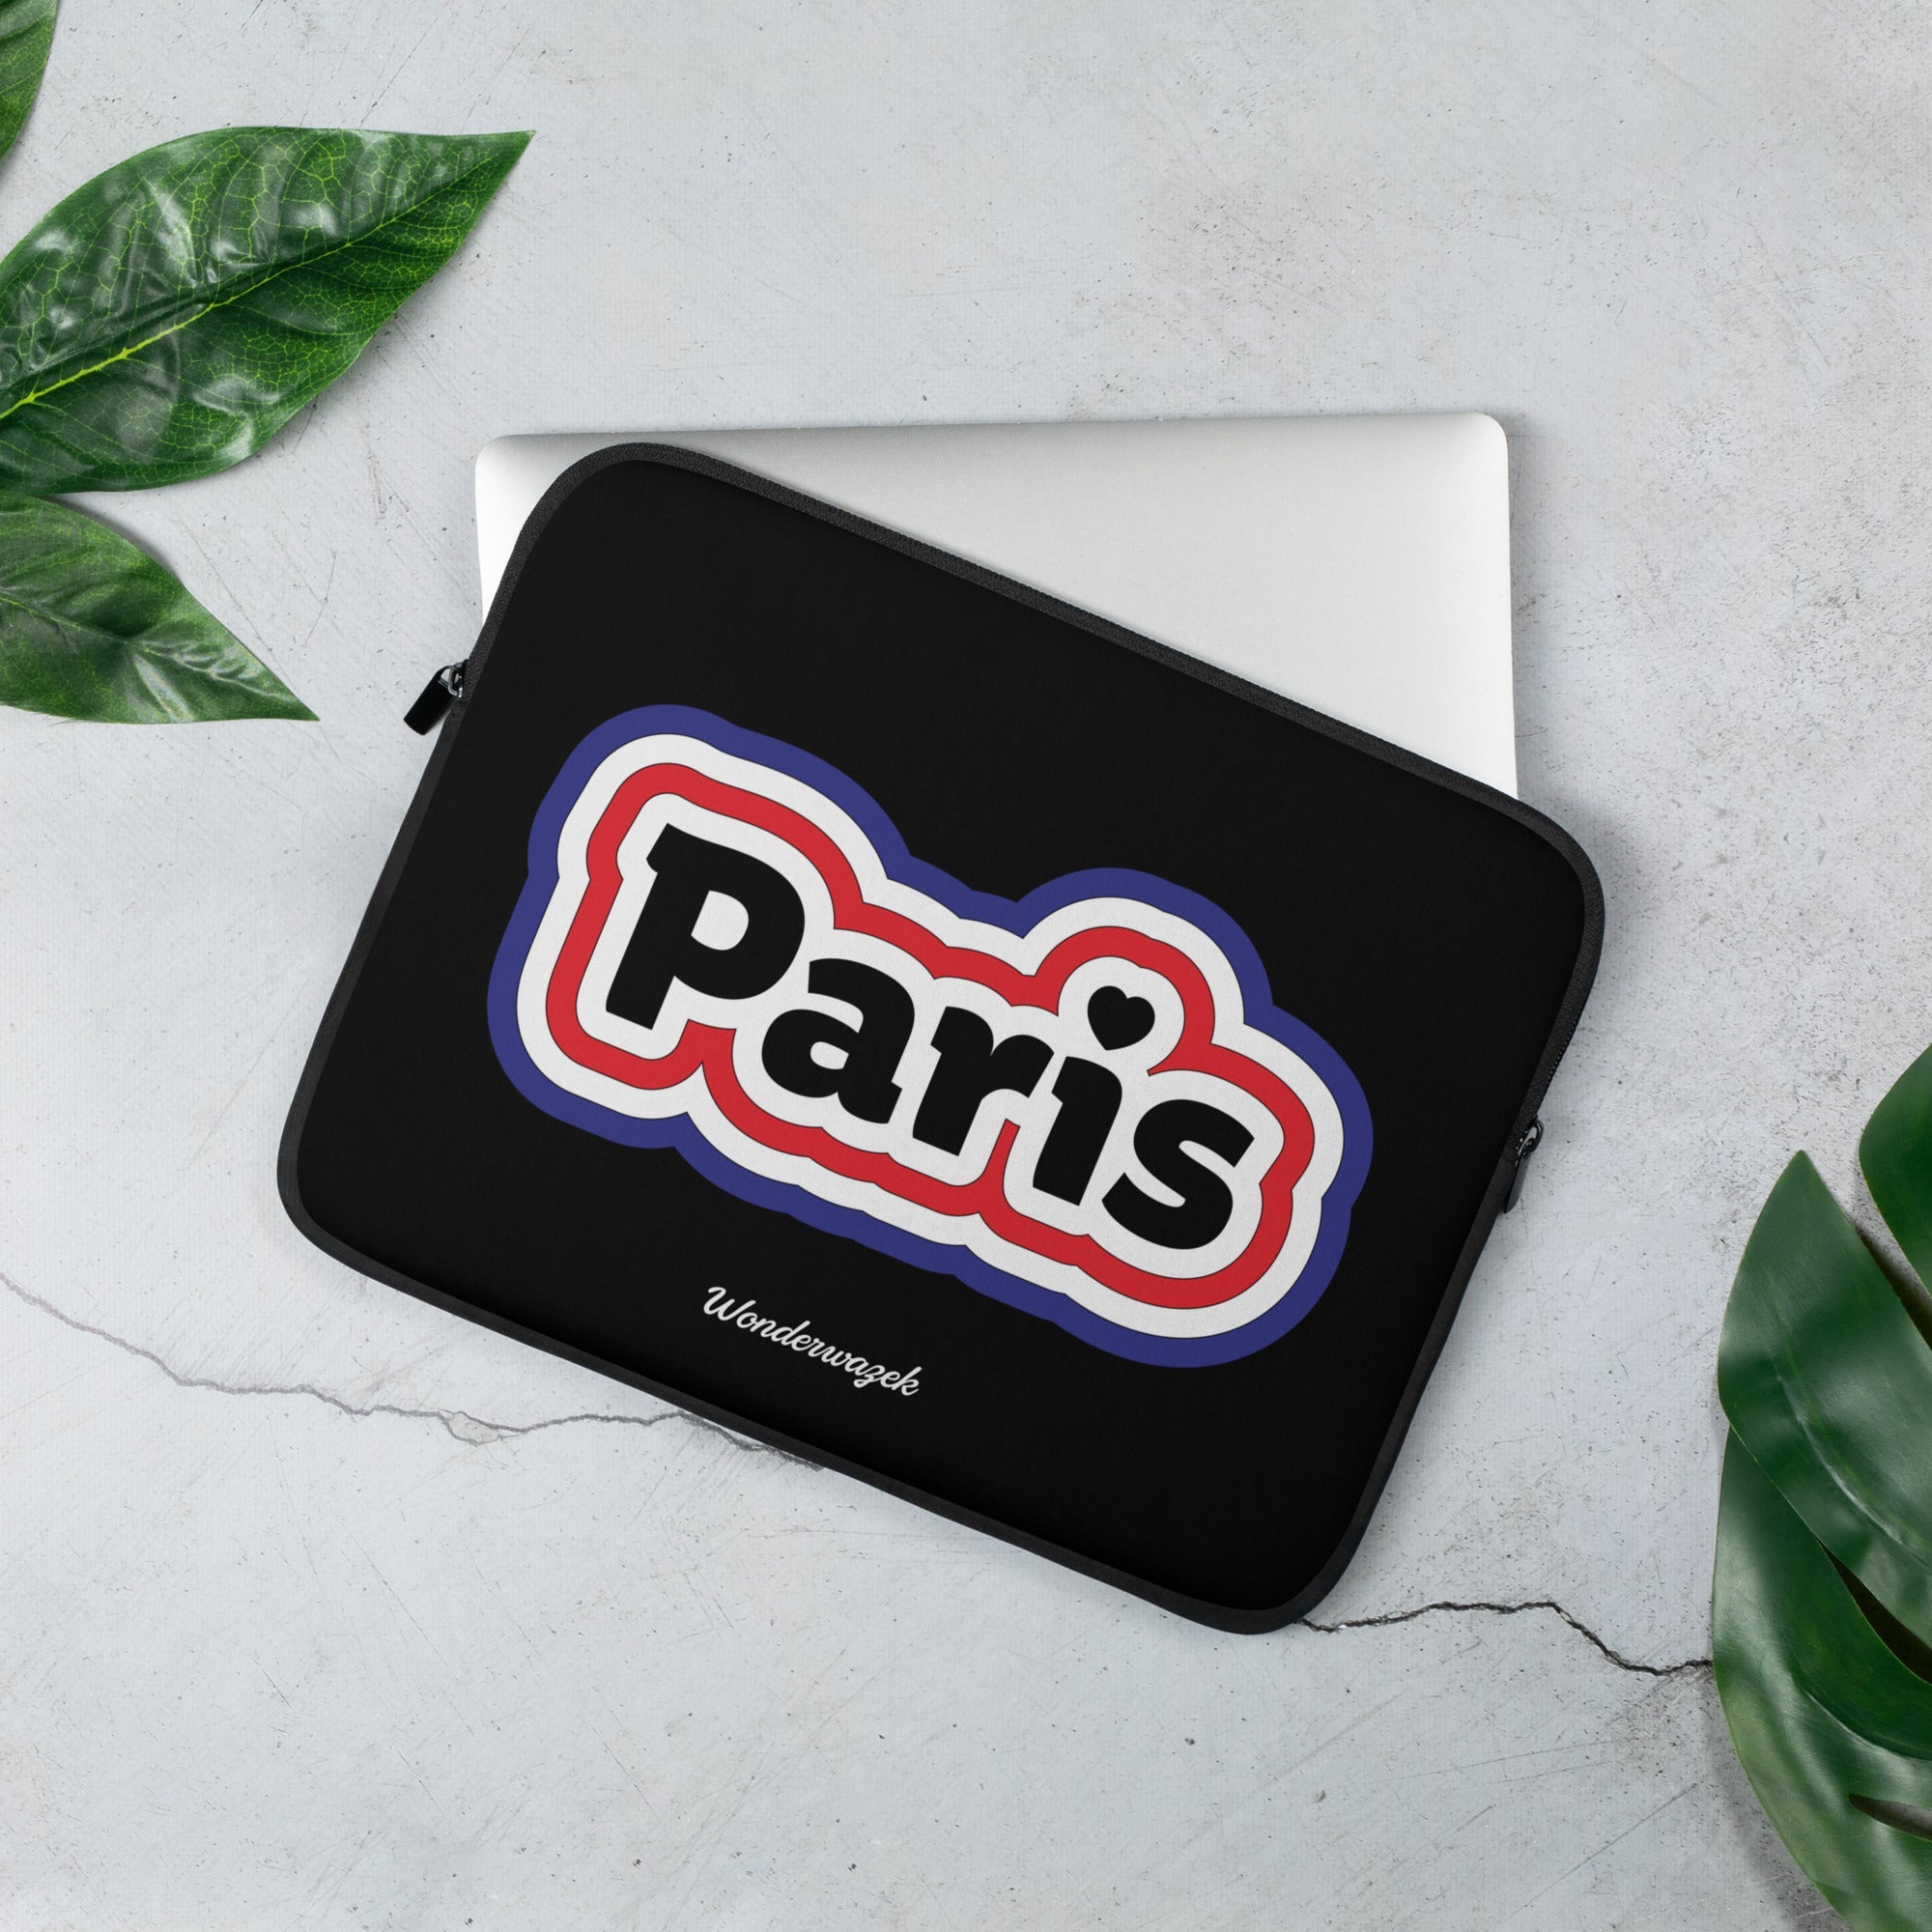 Laptoptasche • Paris – blau, rot, weiß - Wonderwazek